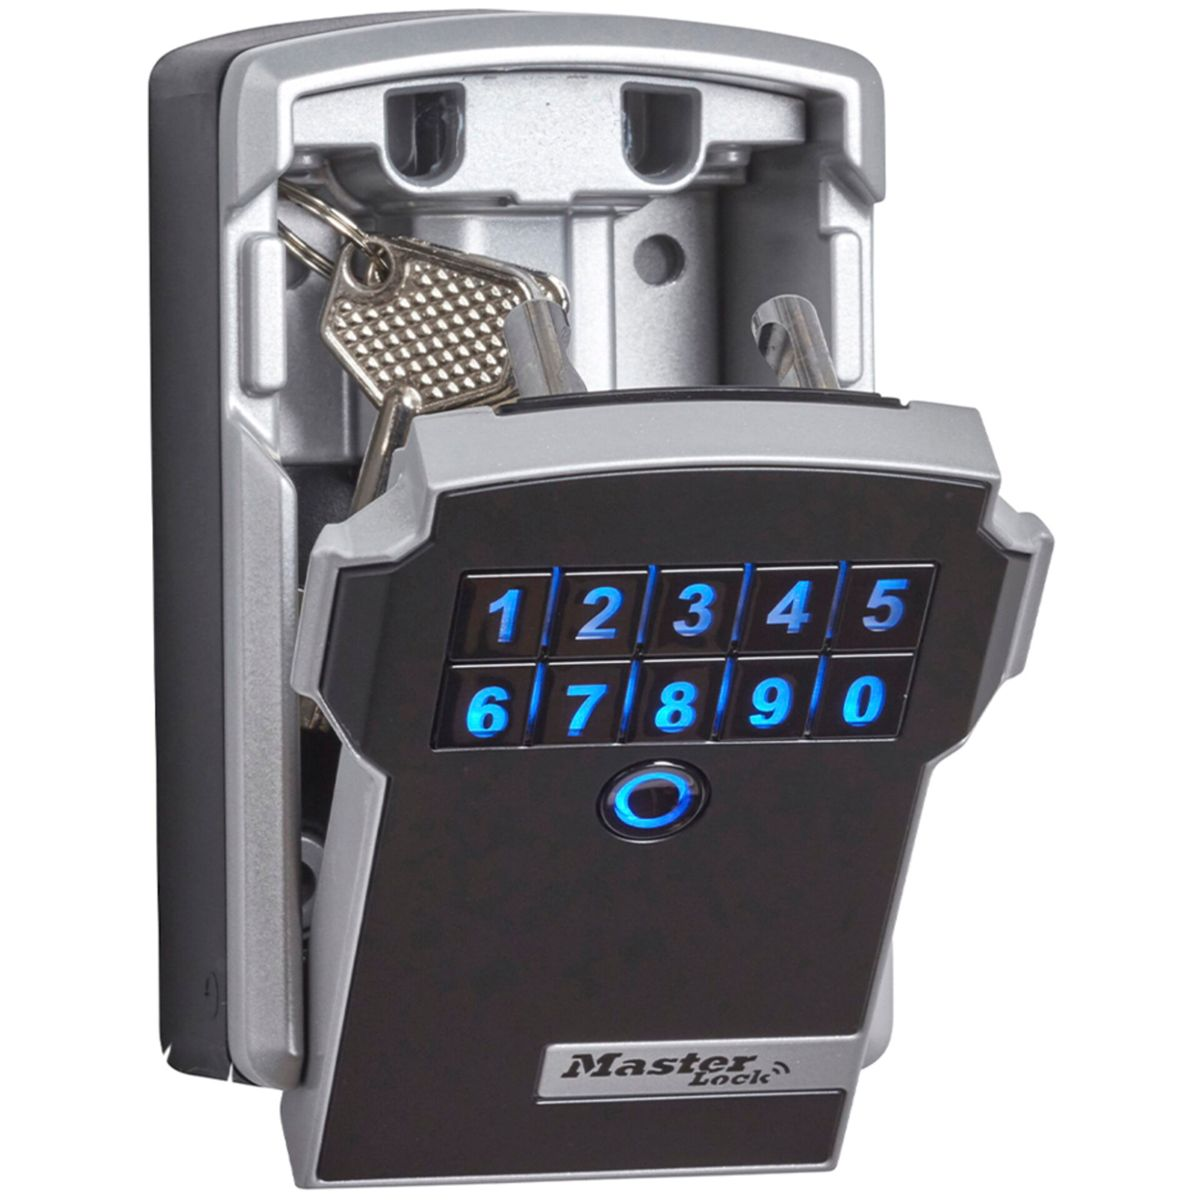 grau MASTERLOCK Lock Schlüsselkasten Schlüsseltresor / Bluetooth 5441EURD schwarz Master schwarz grau